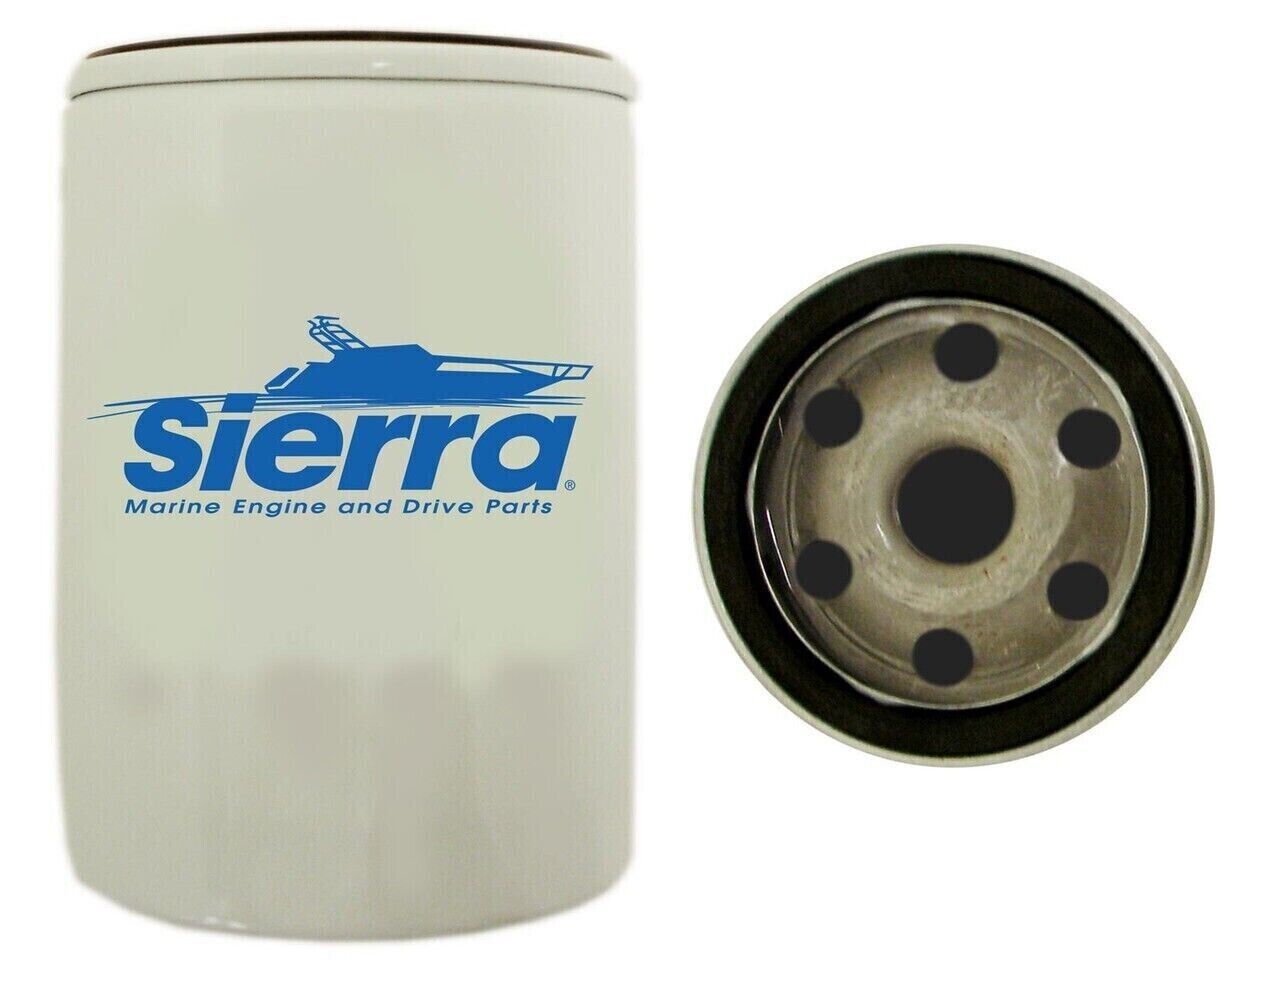 Sierra 18-7974 Oil Filter Marine Engine Parts Volvo Penta 3827069 CDI 118-7974